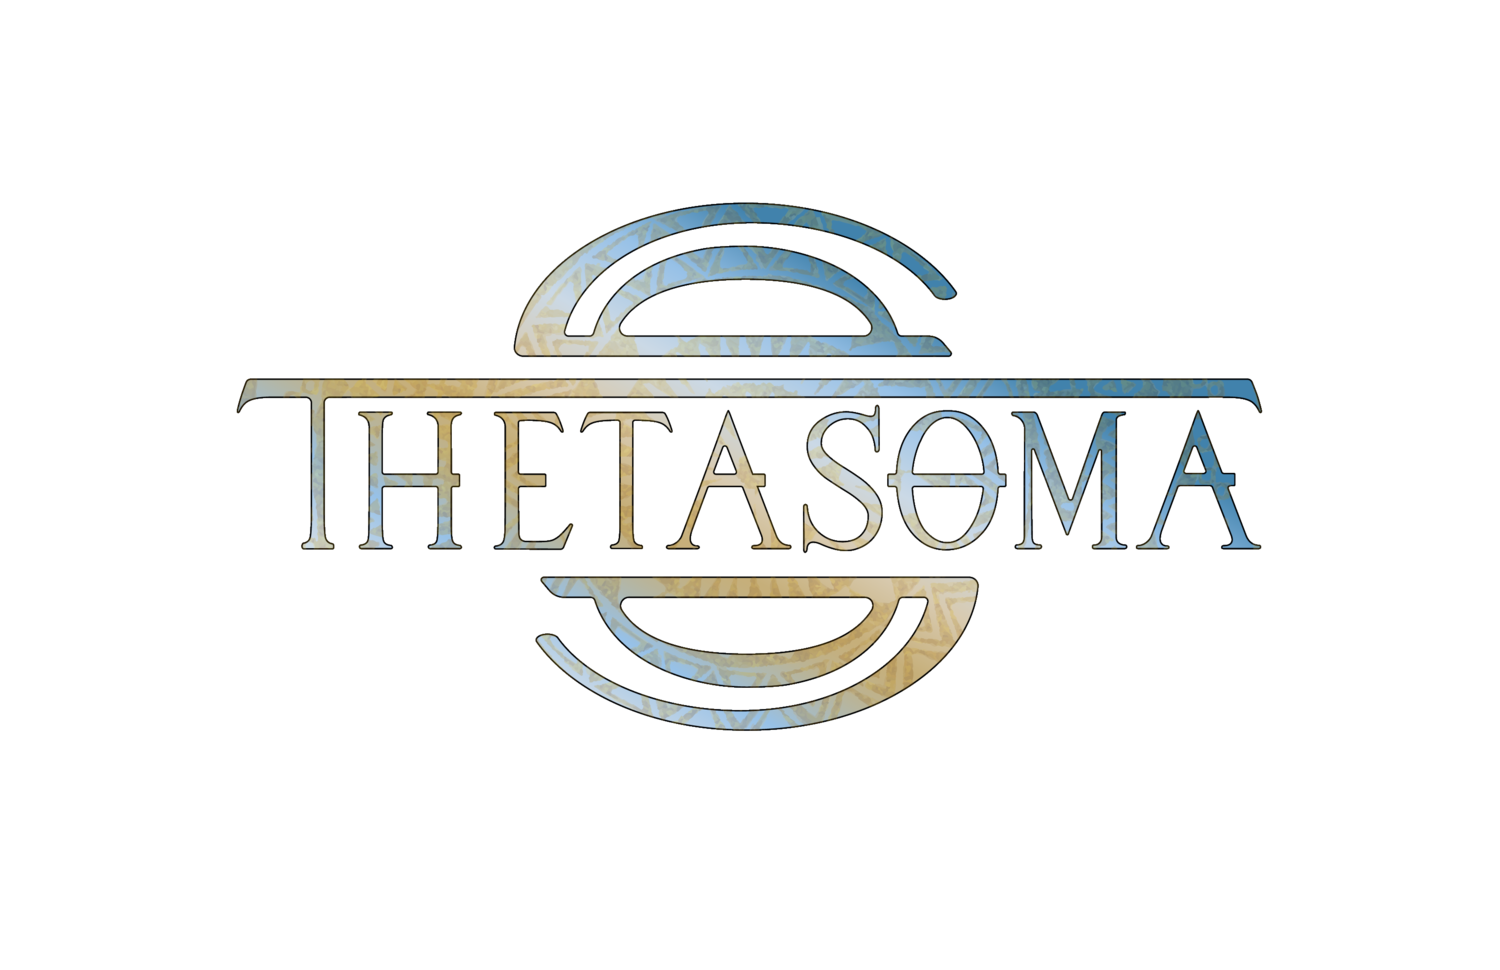 ThetaSoma